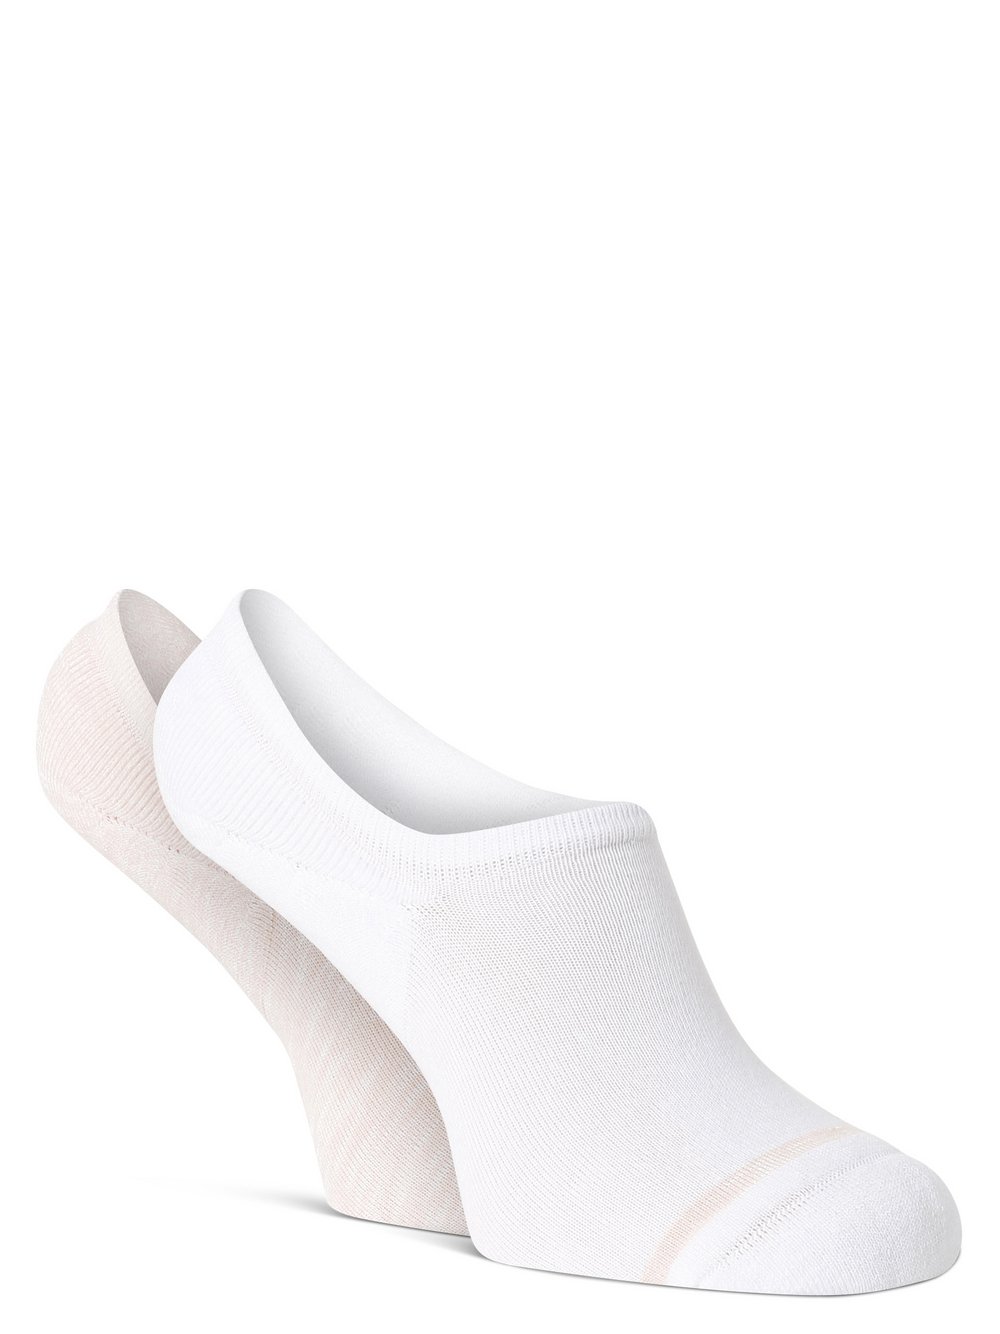 Tommy Hilfiger - Damskie skarpety do obuwia sportowego pakowane po 2 szt., biały|pomarańczowy|różowy